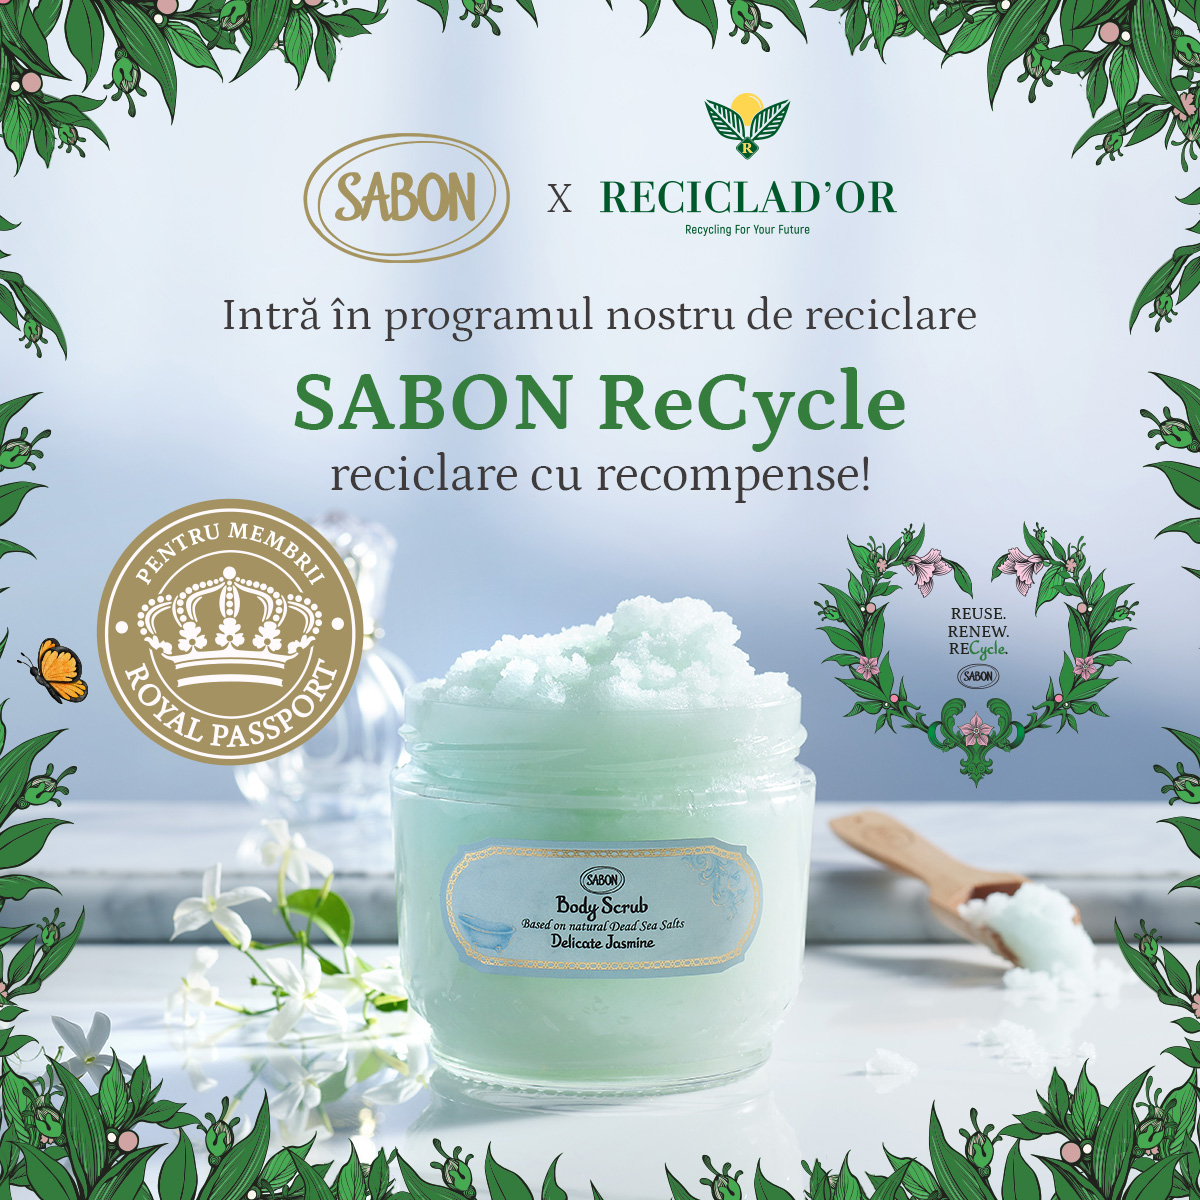 SABON ReCycle în parteneriat cu RECICLAD’OR! Intră în programul nostru de reciclare cu recompense